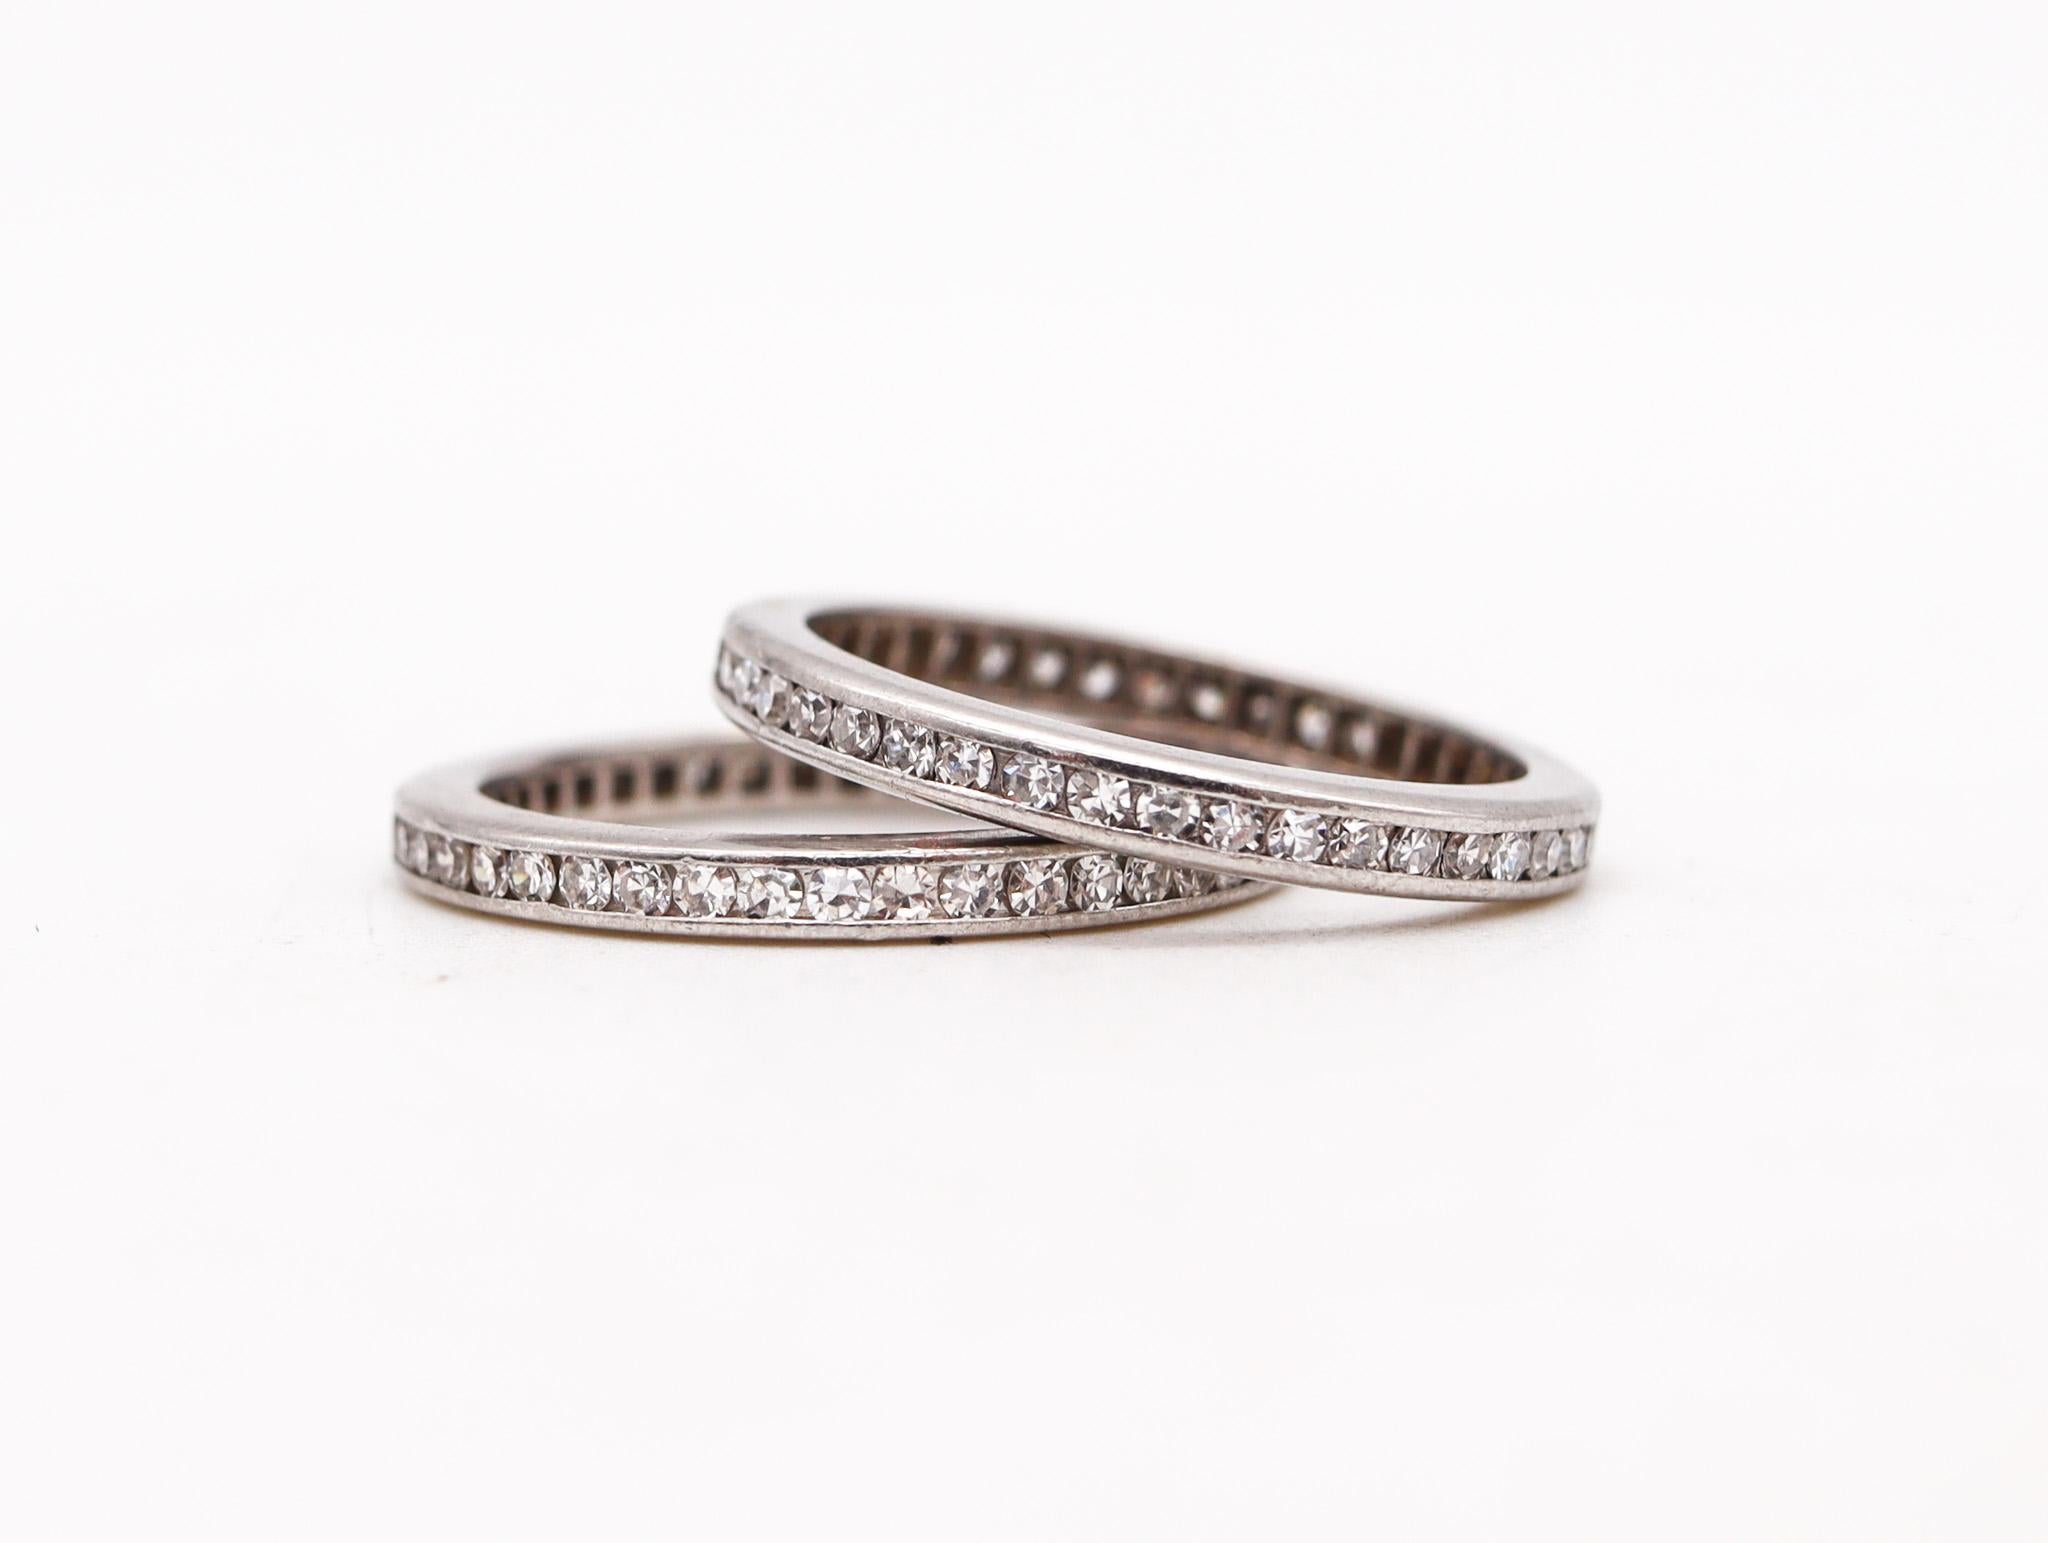 Duo von Ewigkeitsringen mit Diamanten.

Sehr schönes originales Paar Eternity-Band-Ringe, die in Amerika während der Art-Déco-Periode in den 1930er Jahren entstanden sind. Sie wurden aus massivem .900/.999 Platin mit hochglanzpolierter Oberfläche